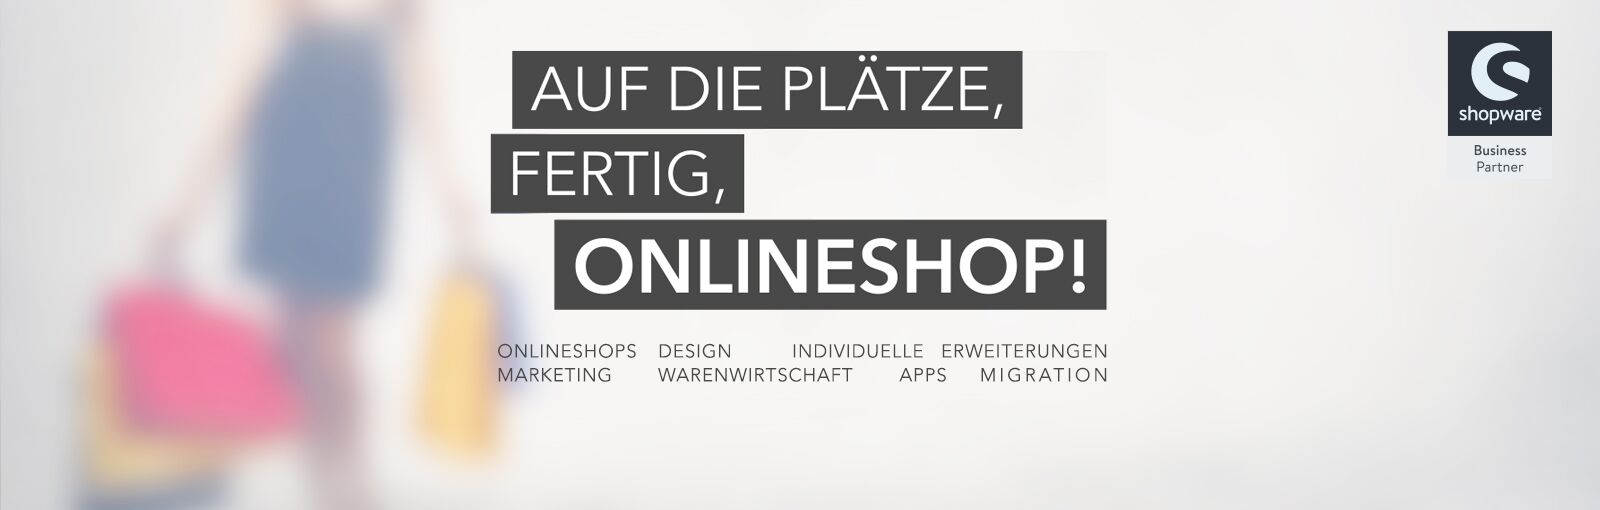 Auf die Plätze fertig Onlineshop - Shopware, Design, Individuelle Erweiterungen, Marketing, Warenwirtschaft, App, Migration